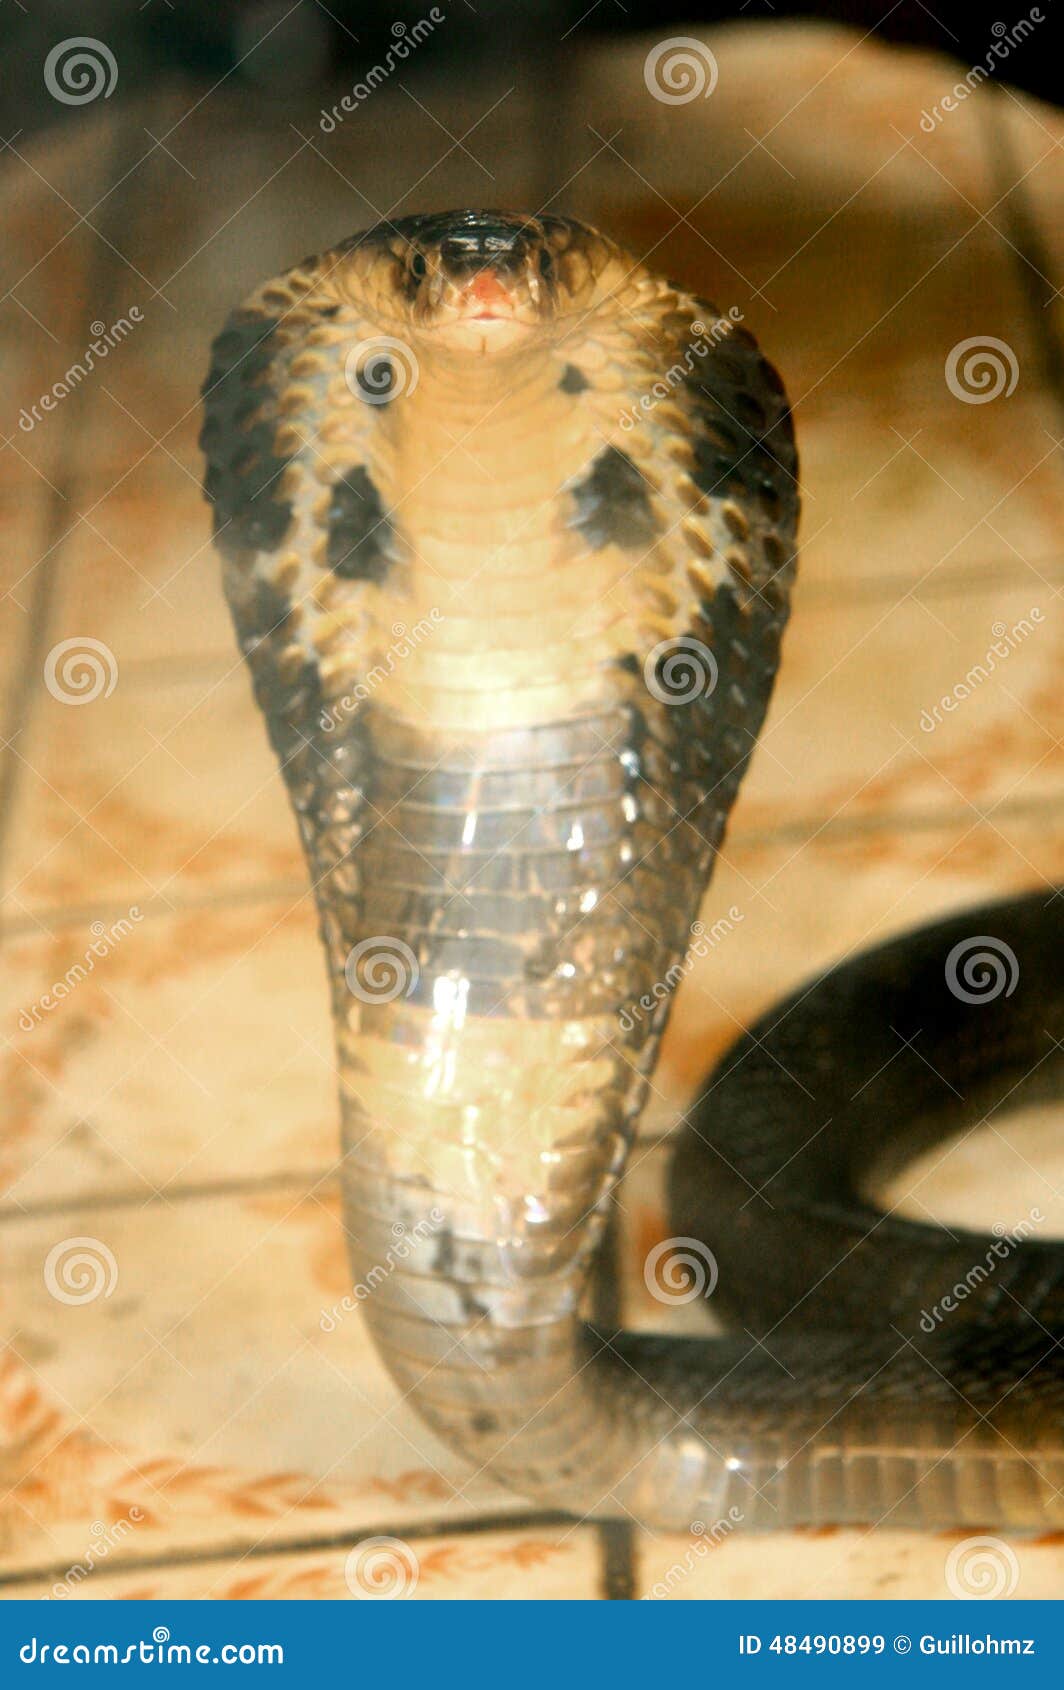 COBRA NAJA stock image. Image of asia, cobras, front - 48490899